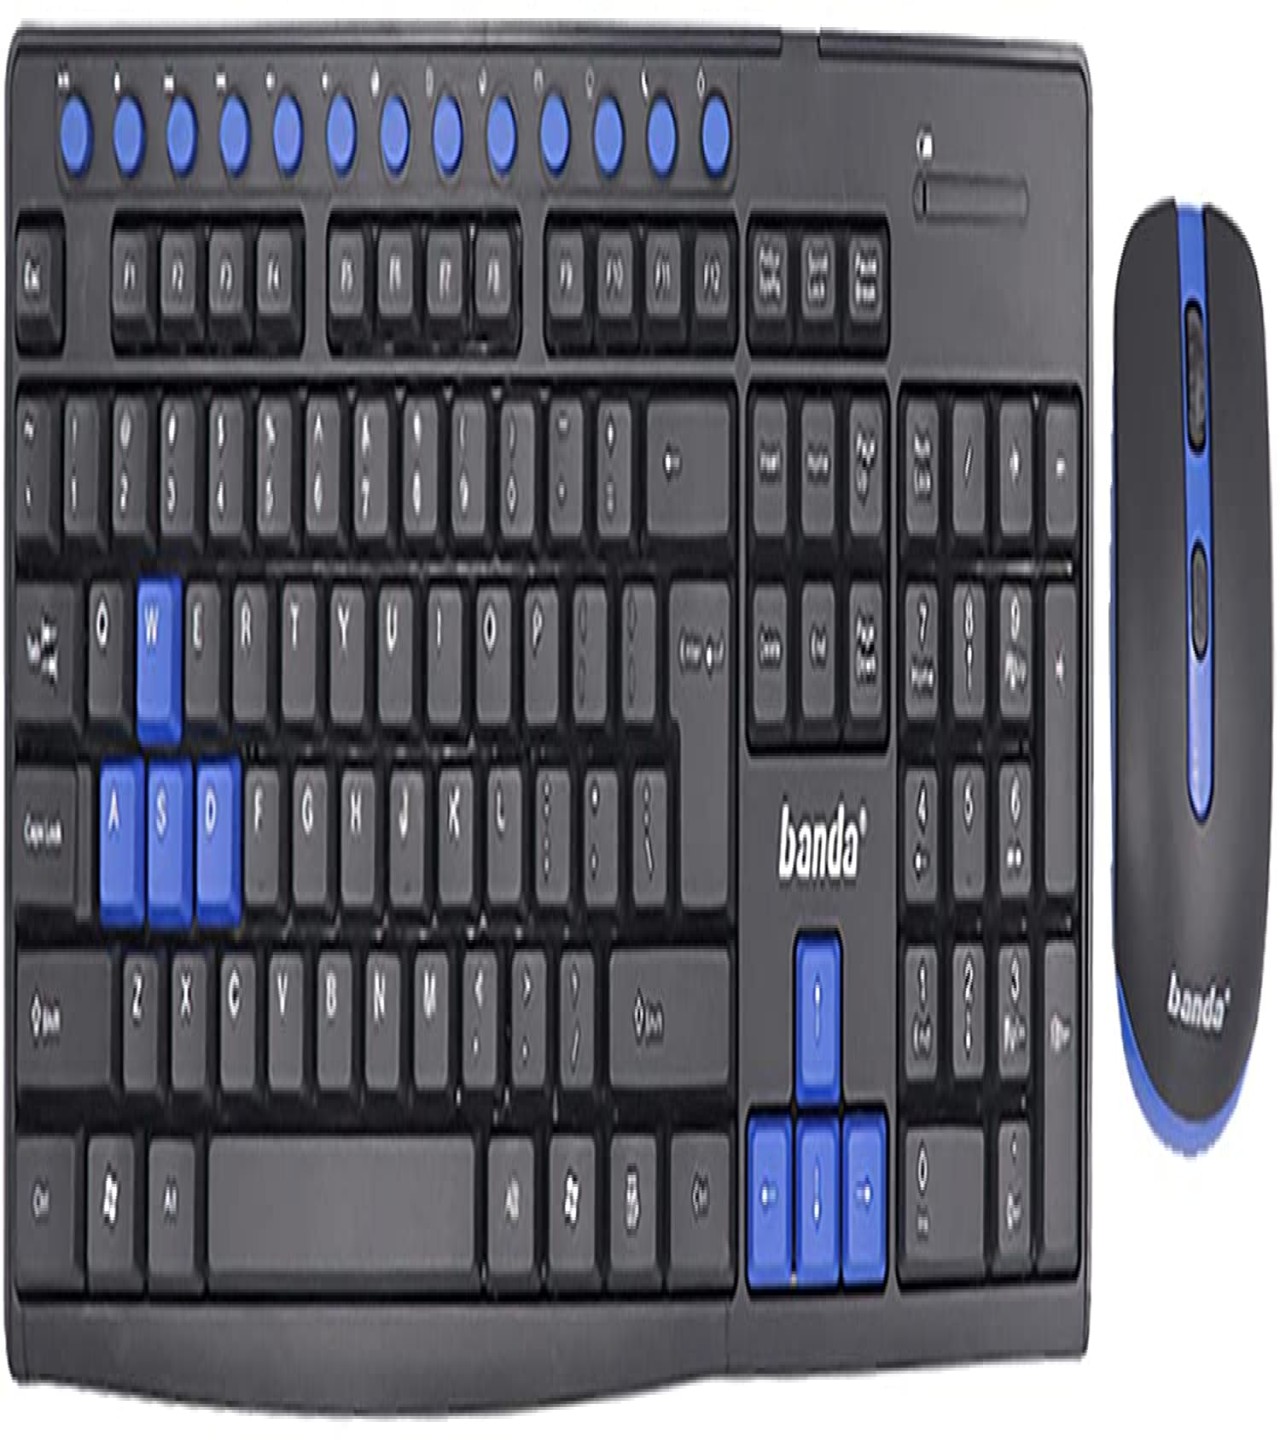 Banda Wireless Keyboard & Mouse Combo (W400)